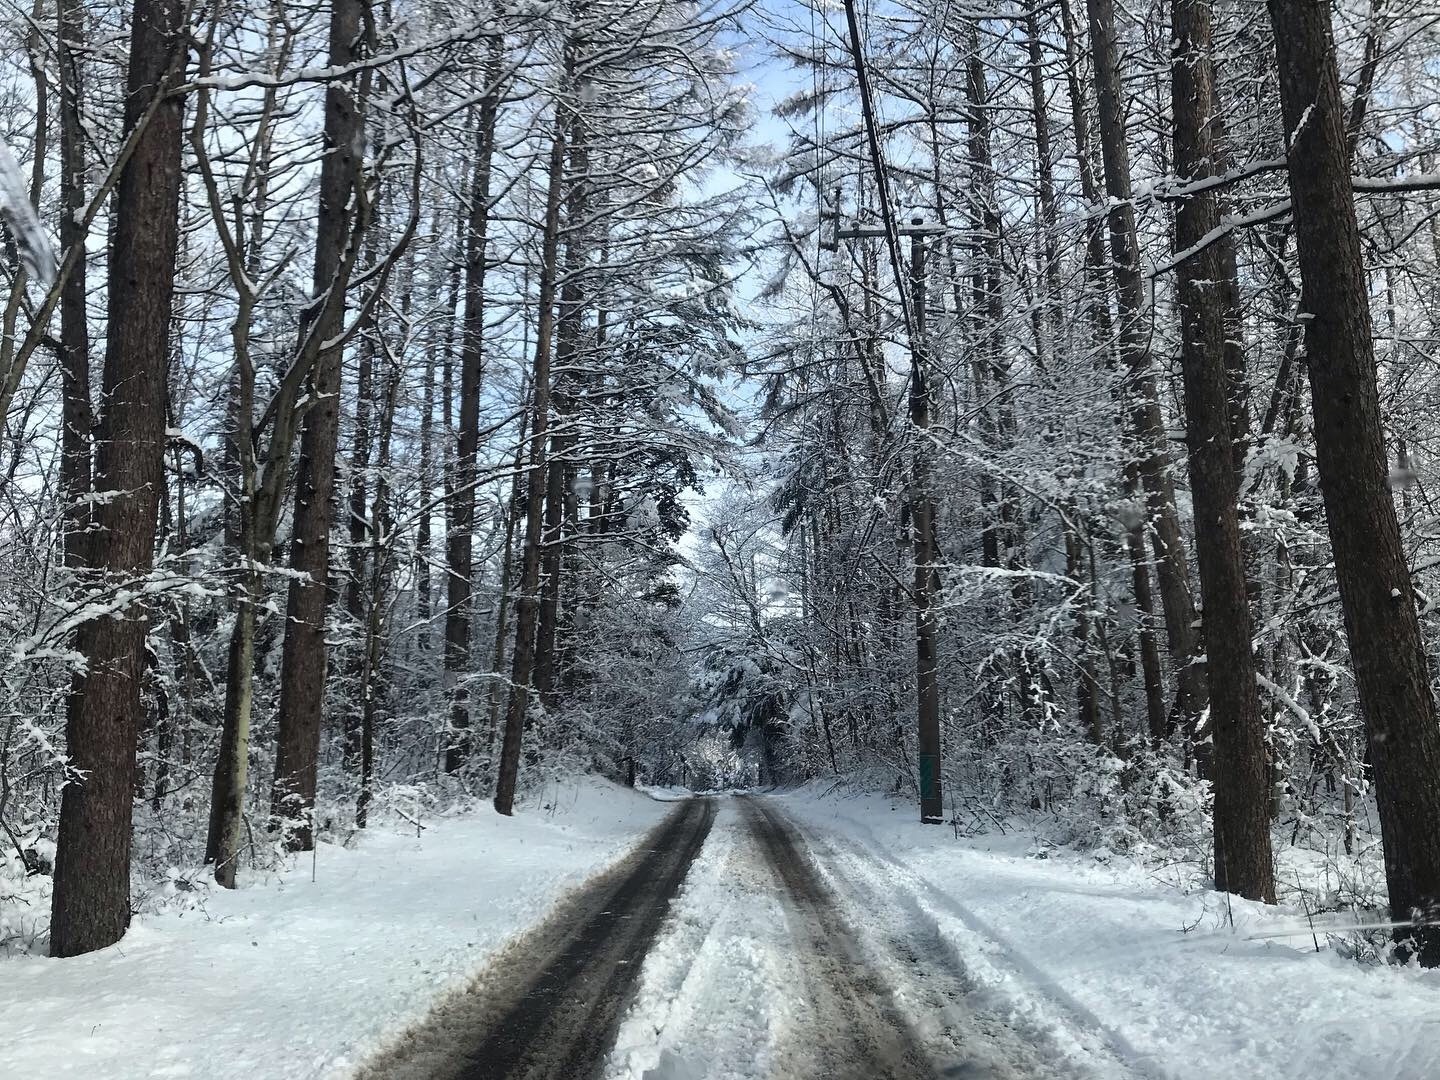 林道には凍った轍がくっきり。運転には十分気をつけてください